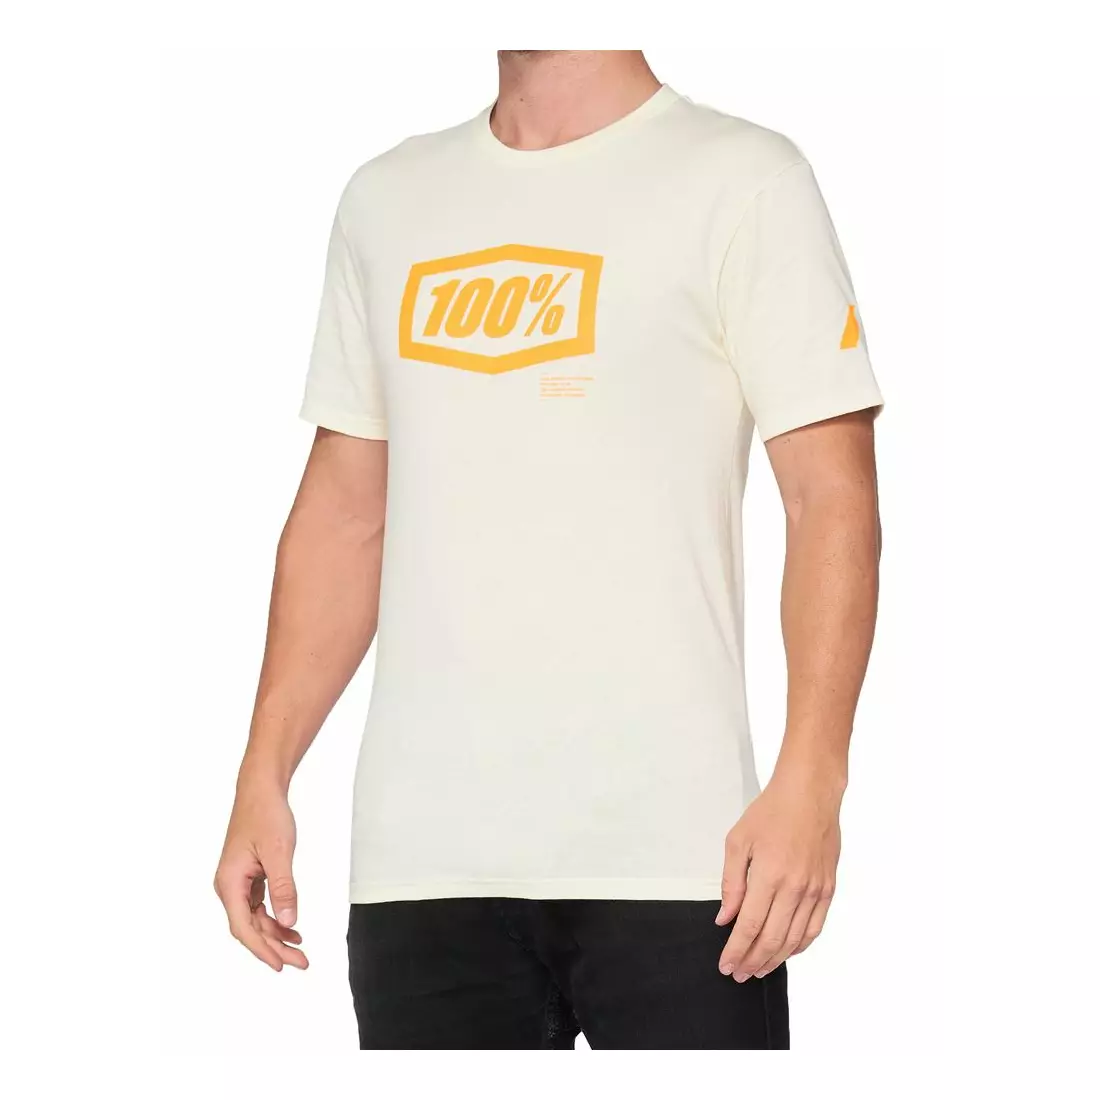 100% Herren Sport T-Shirt mit kurzen Ärmeln ESSENTIAL chalk orange STO-32016-461-13